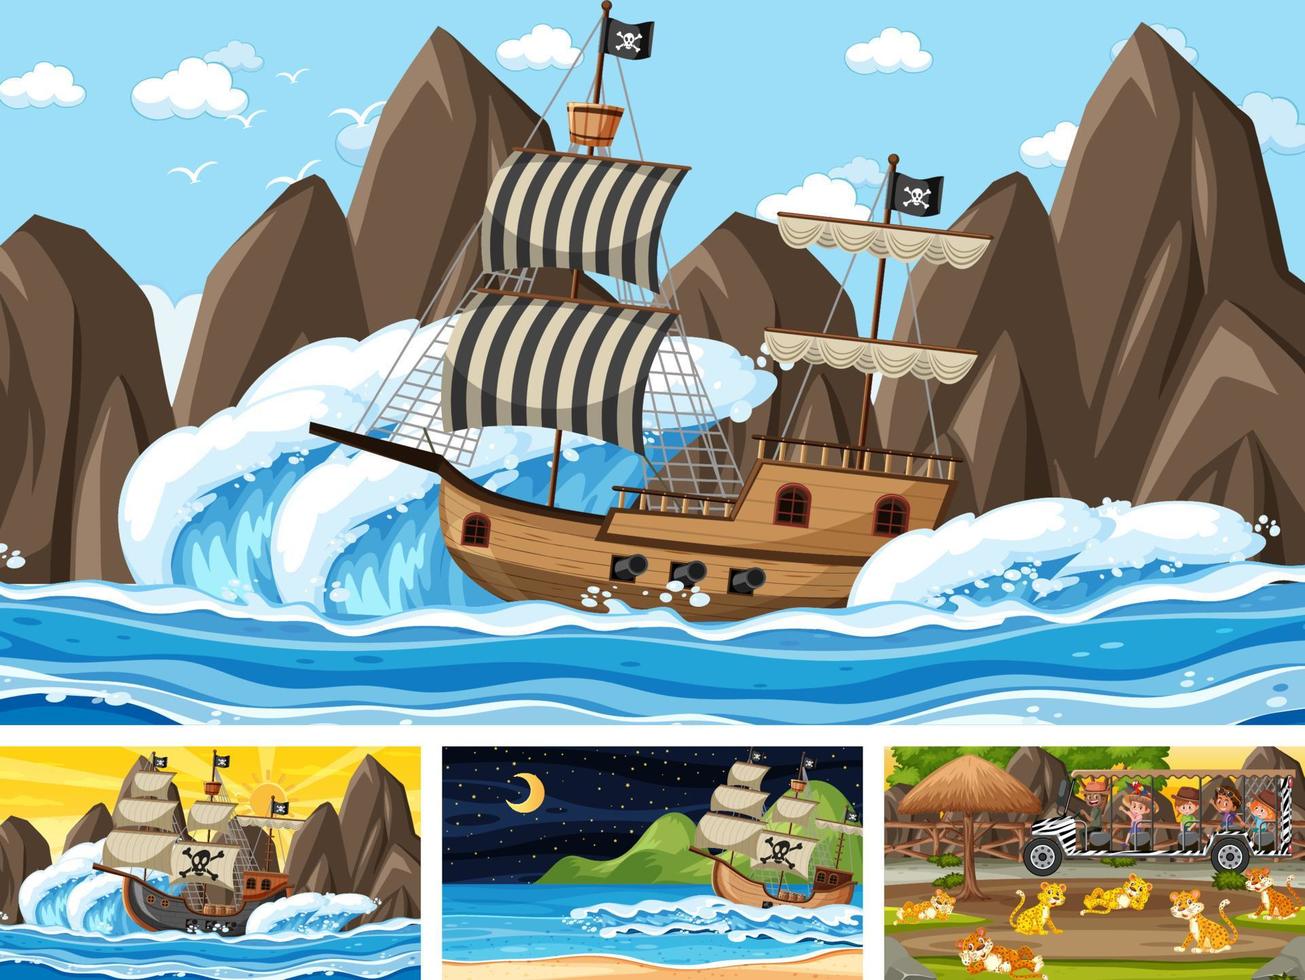 set di scene diverse con nave pirata al mare e animali nello zoo vettore